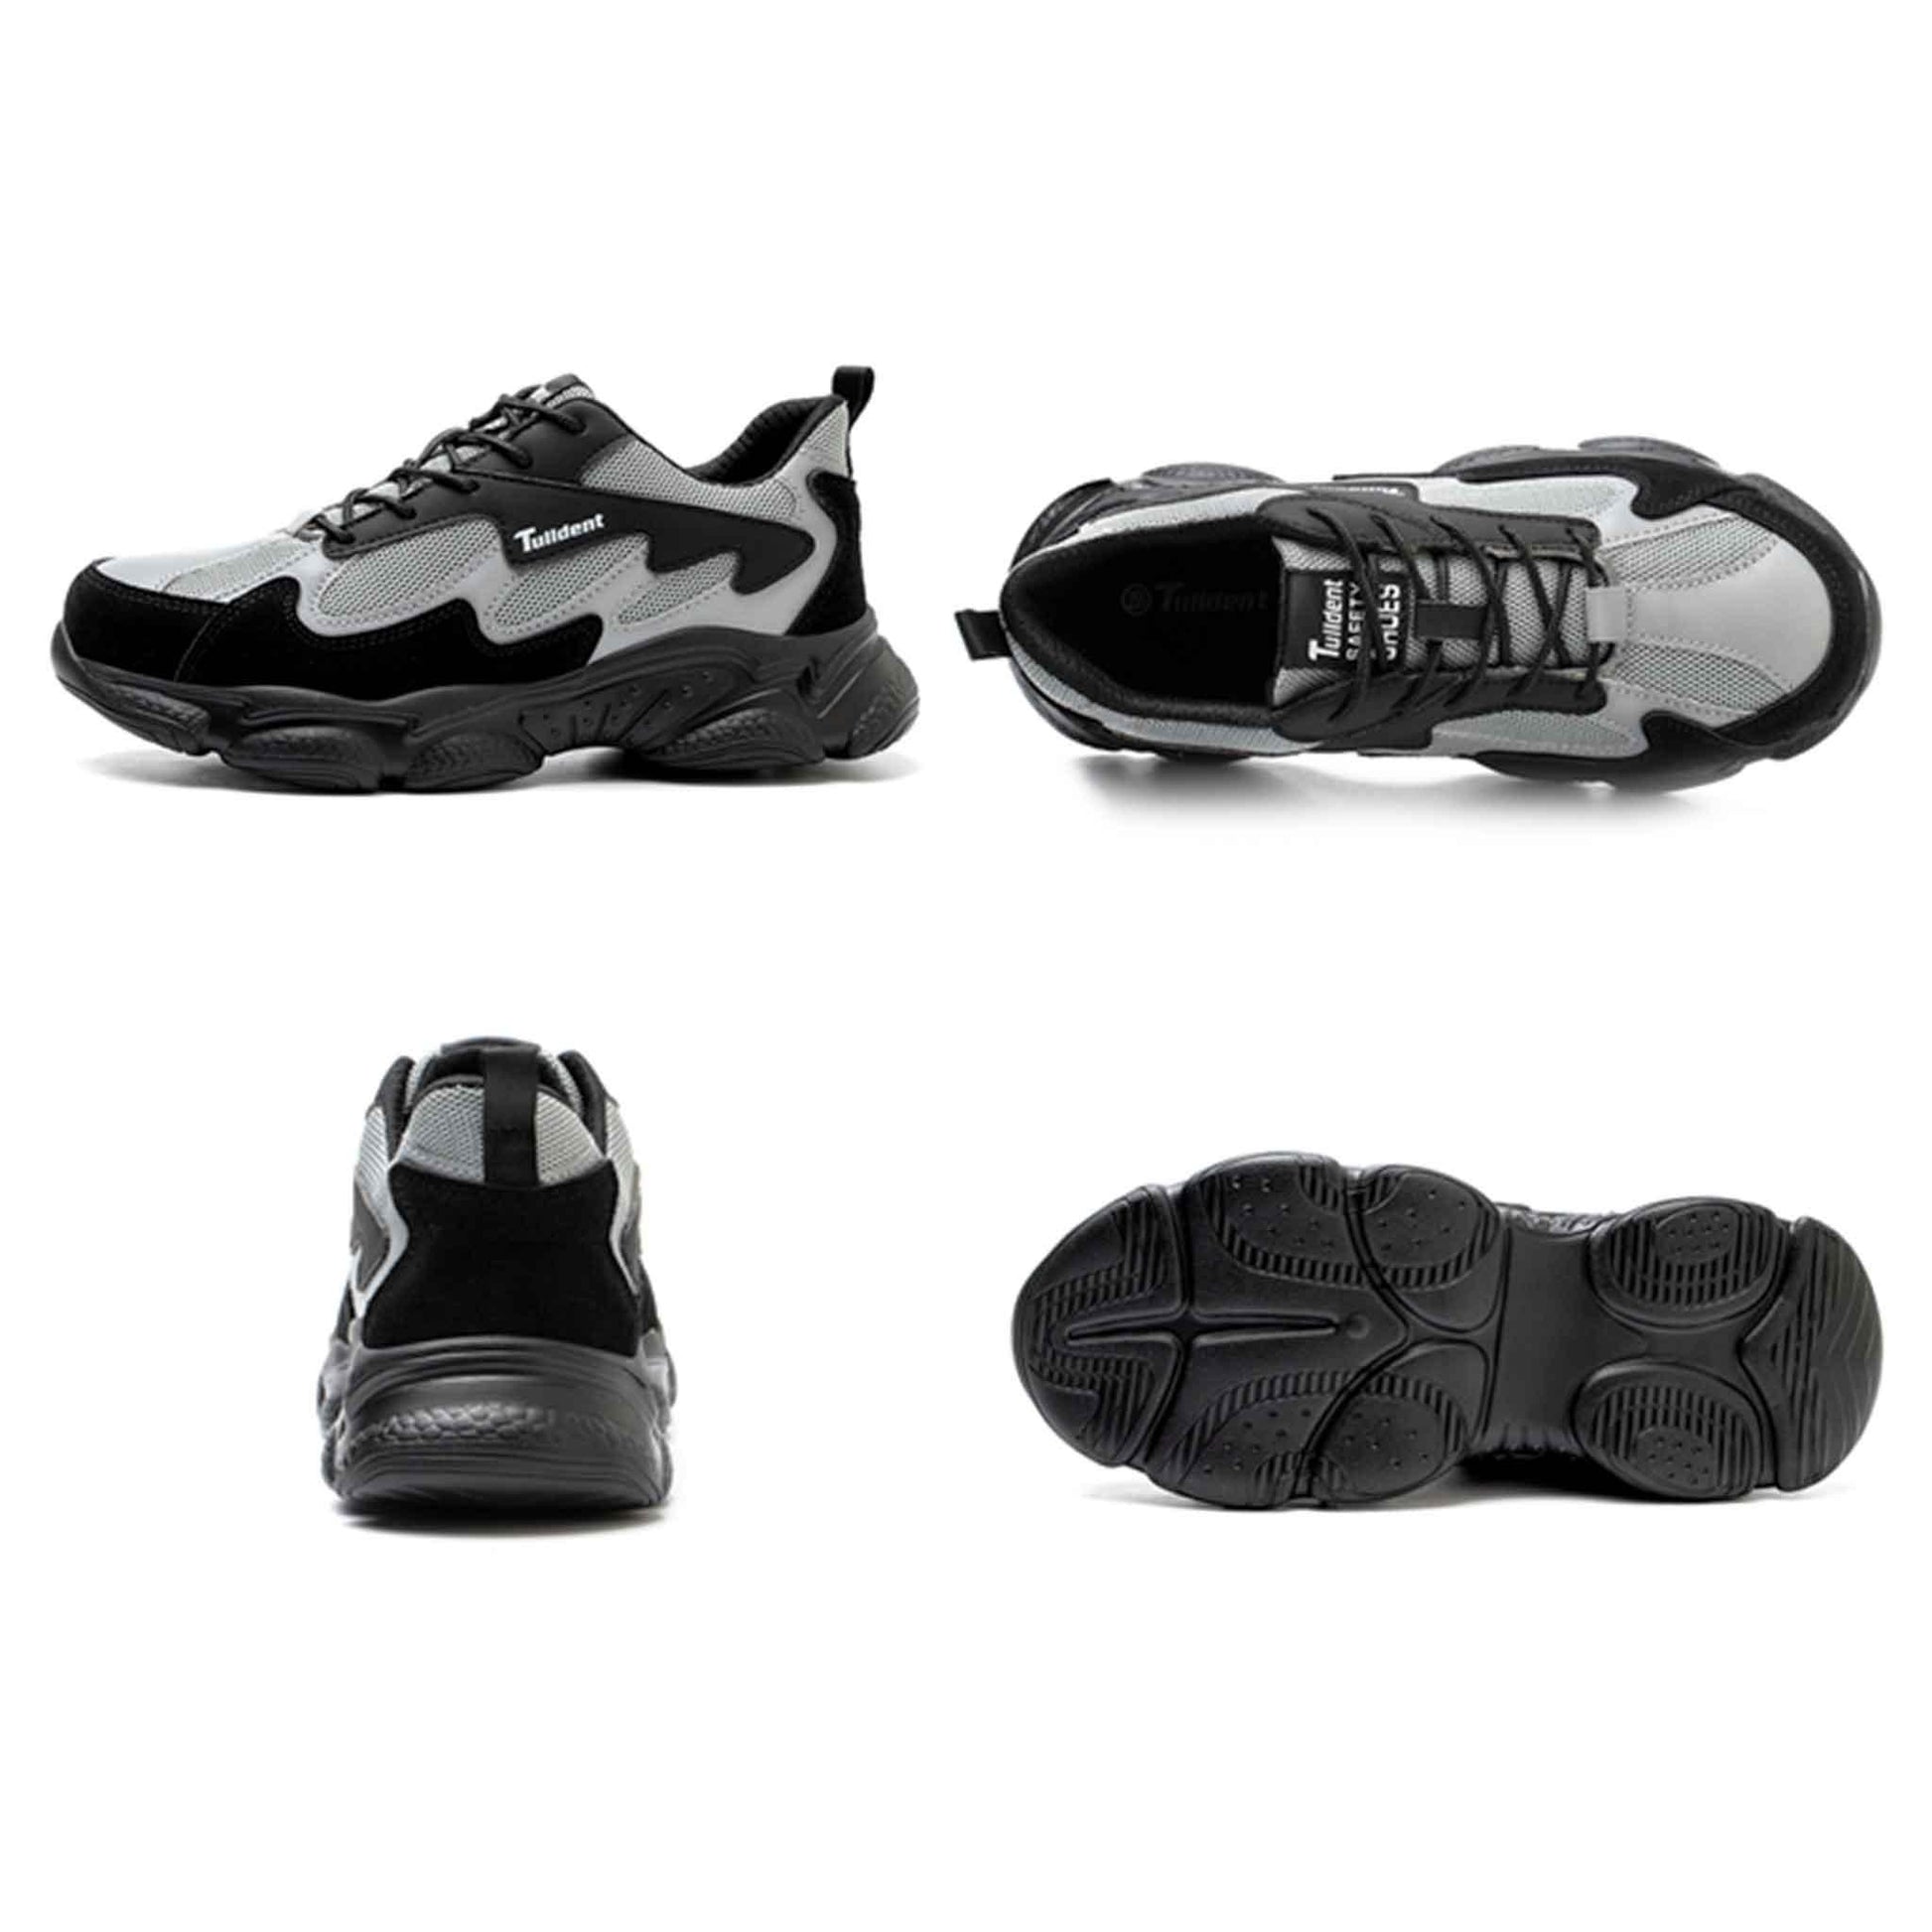 Women's Steel Toe Hiker Shoes - Lightweight | Z012 - USINE PRO Footwear